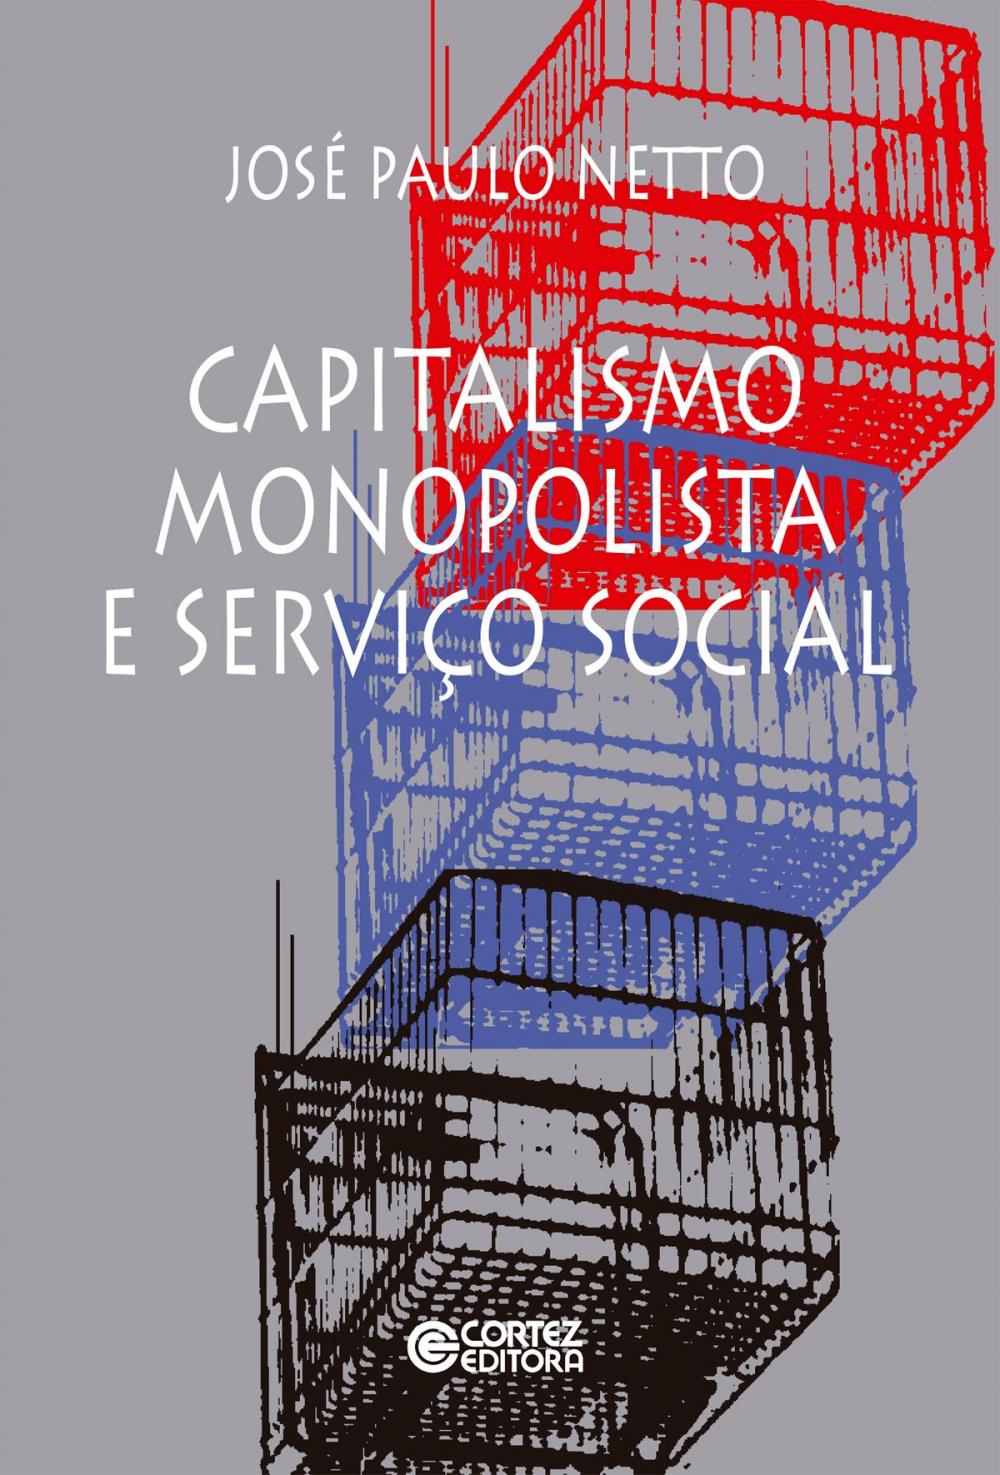 Big bigCover of Capitalismo monopolista e Serviço Social